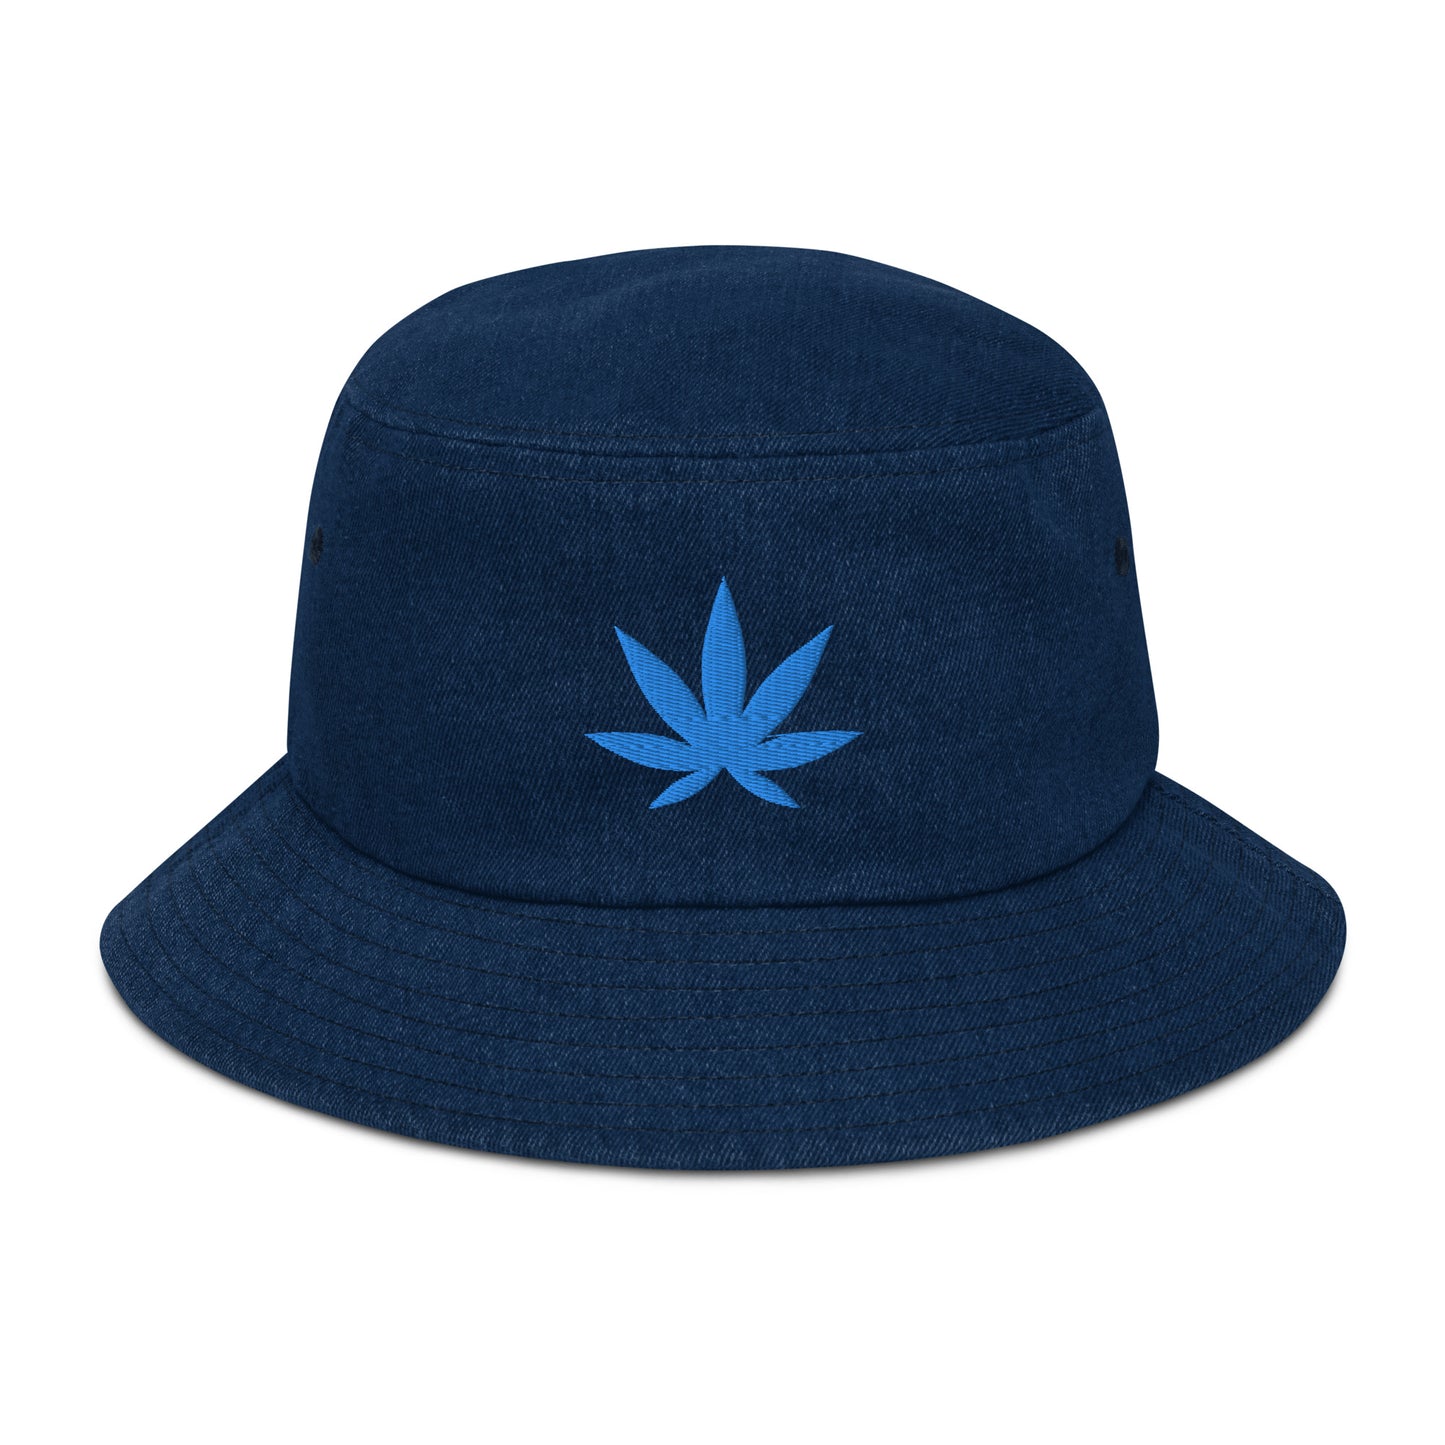 420 DENIM BUCKET HAT - OCEAN BLUE